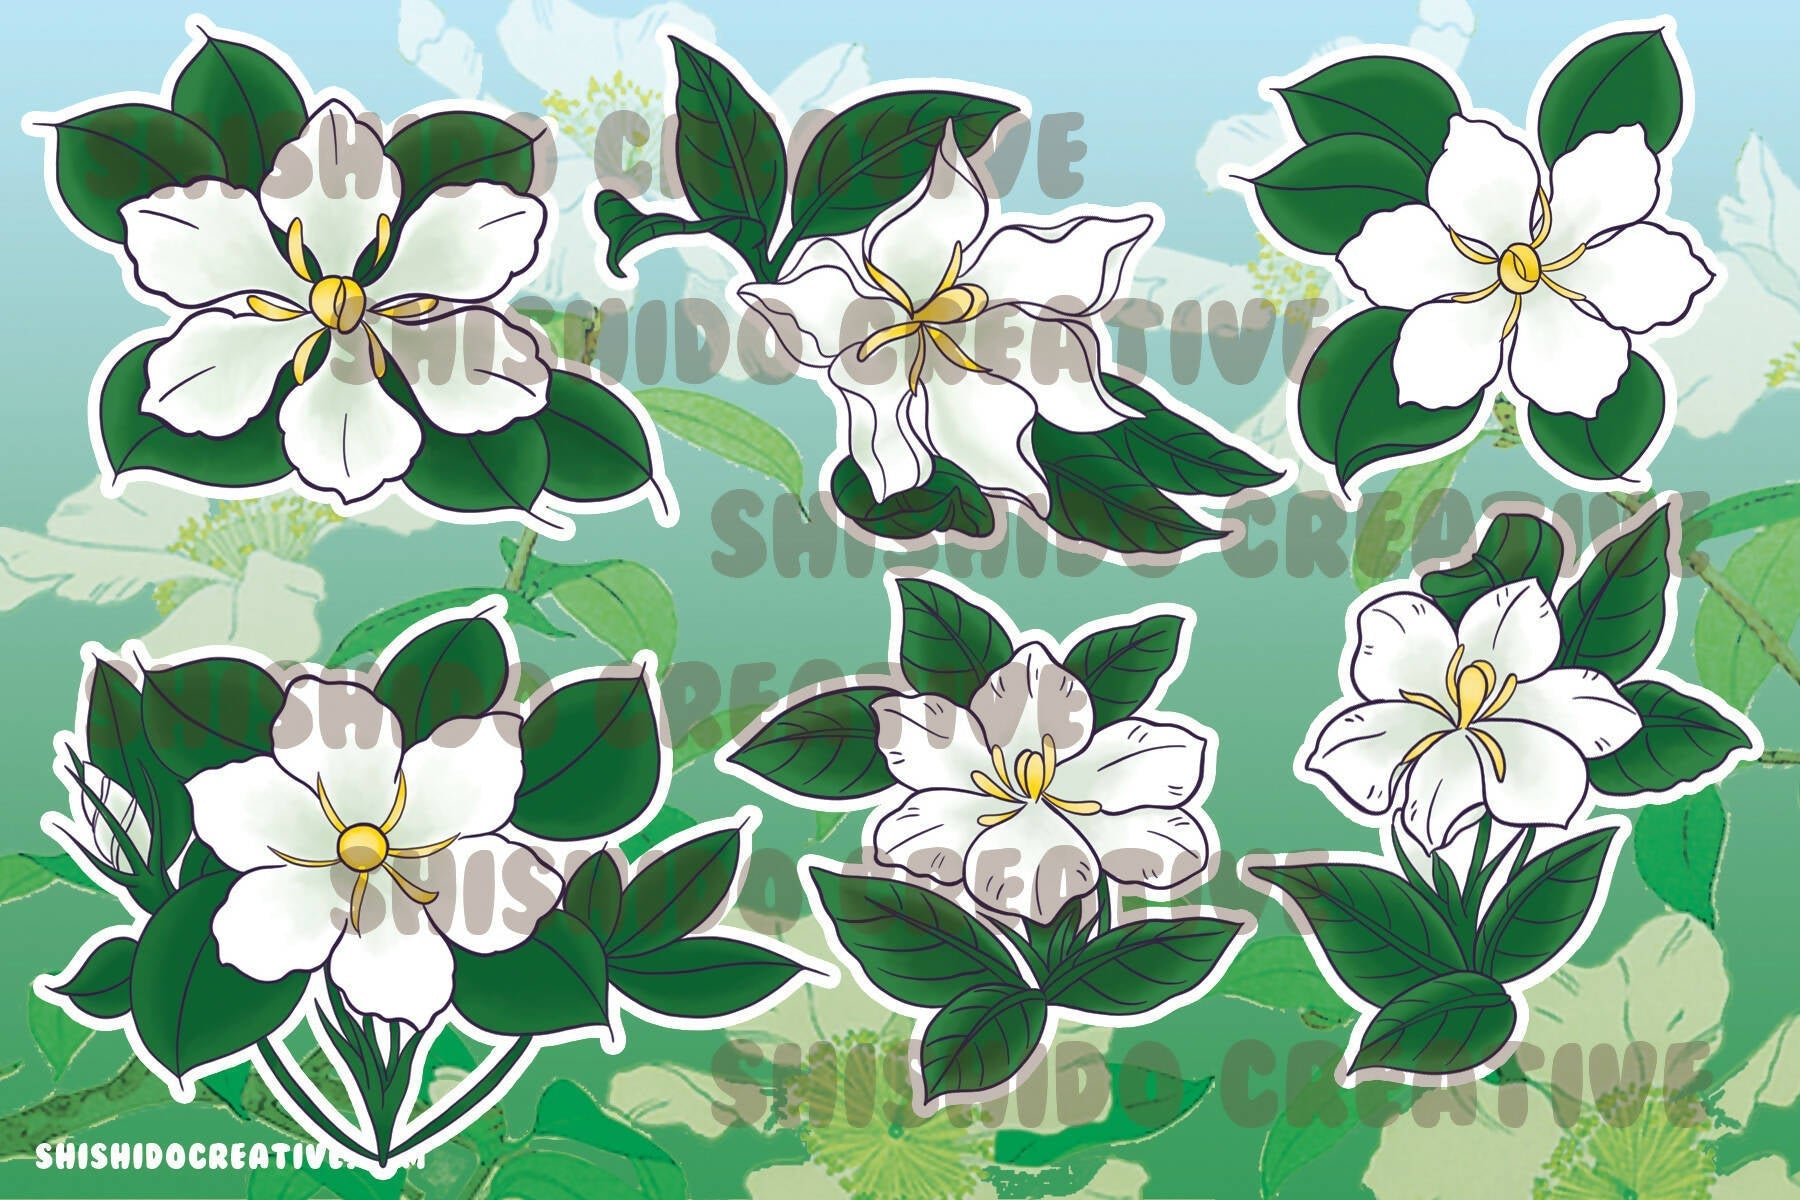 Sampaguita Jasmine Gardenia Florals Sticker Sheet • 4x6" Planner Stickers